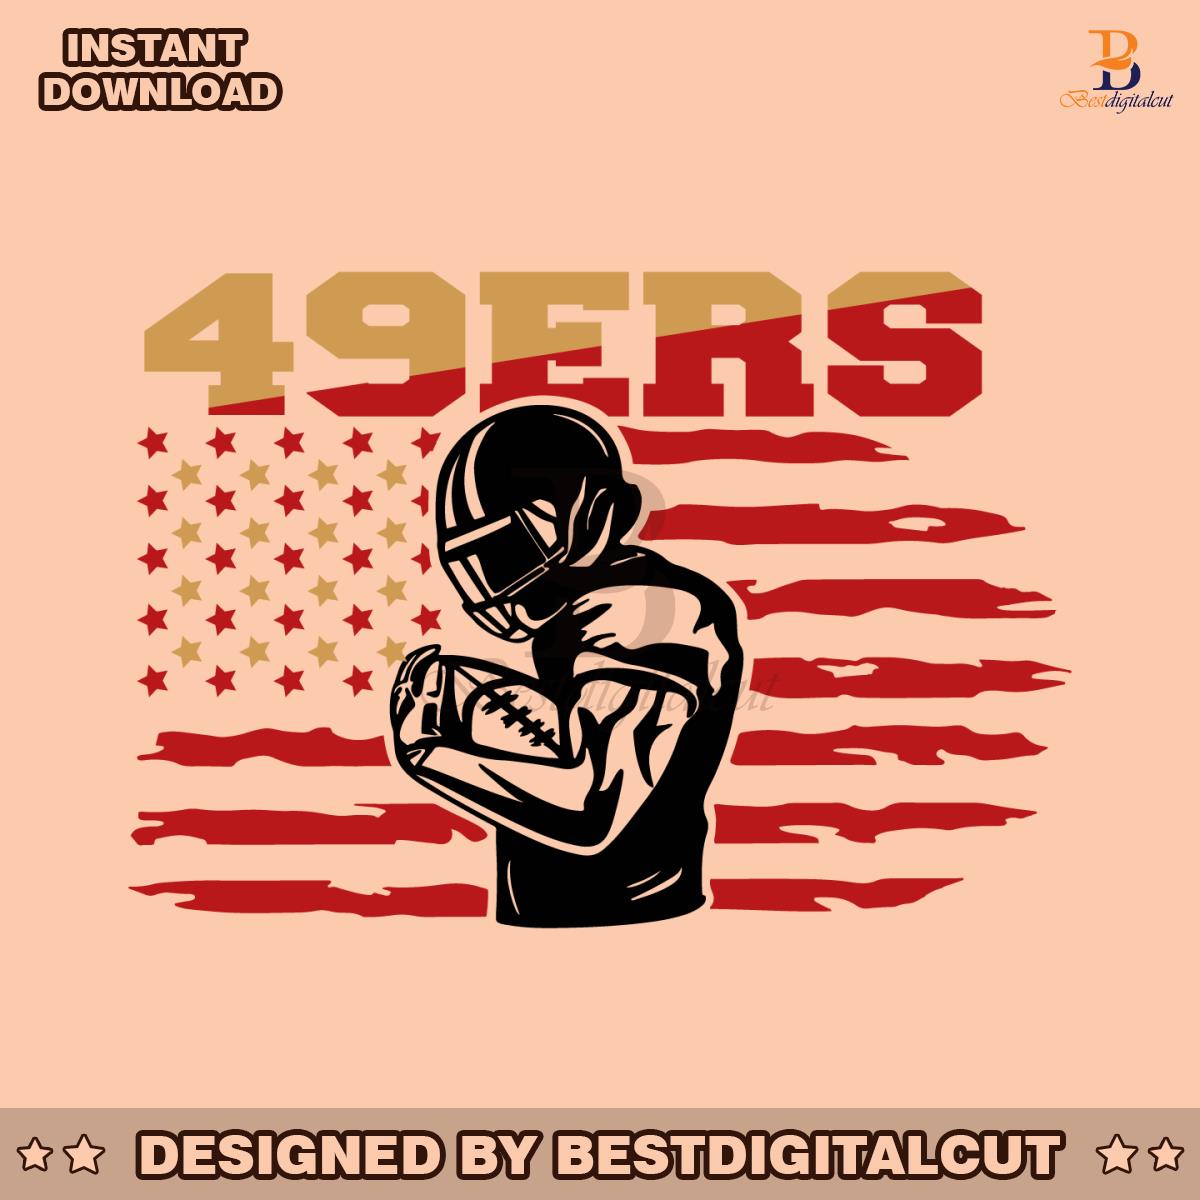 49ers-flag-football-player-svg-digital-download